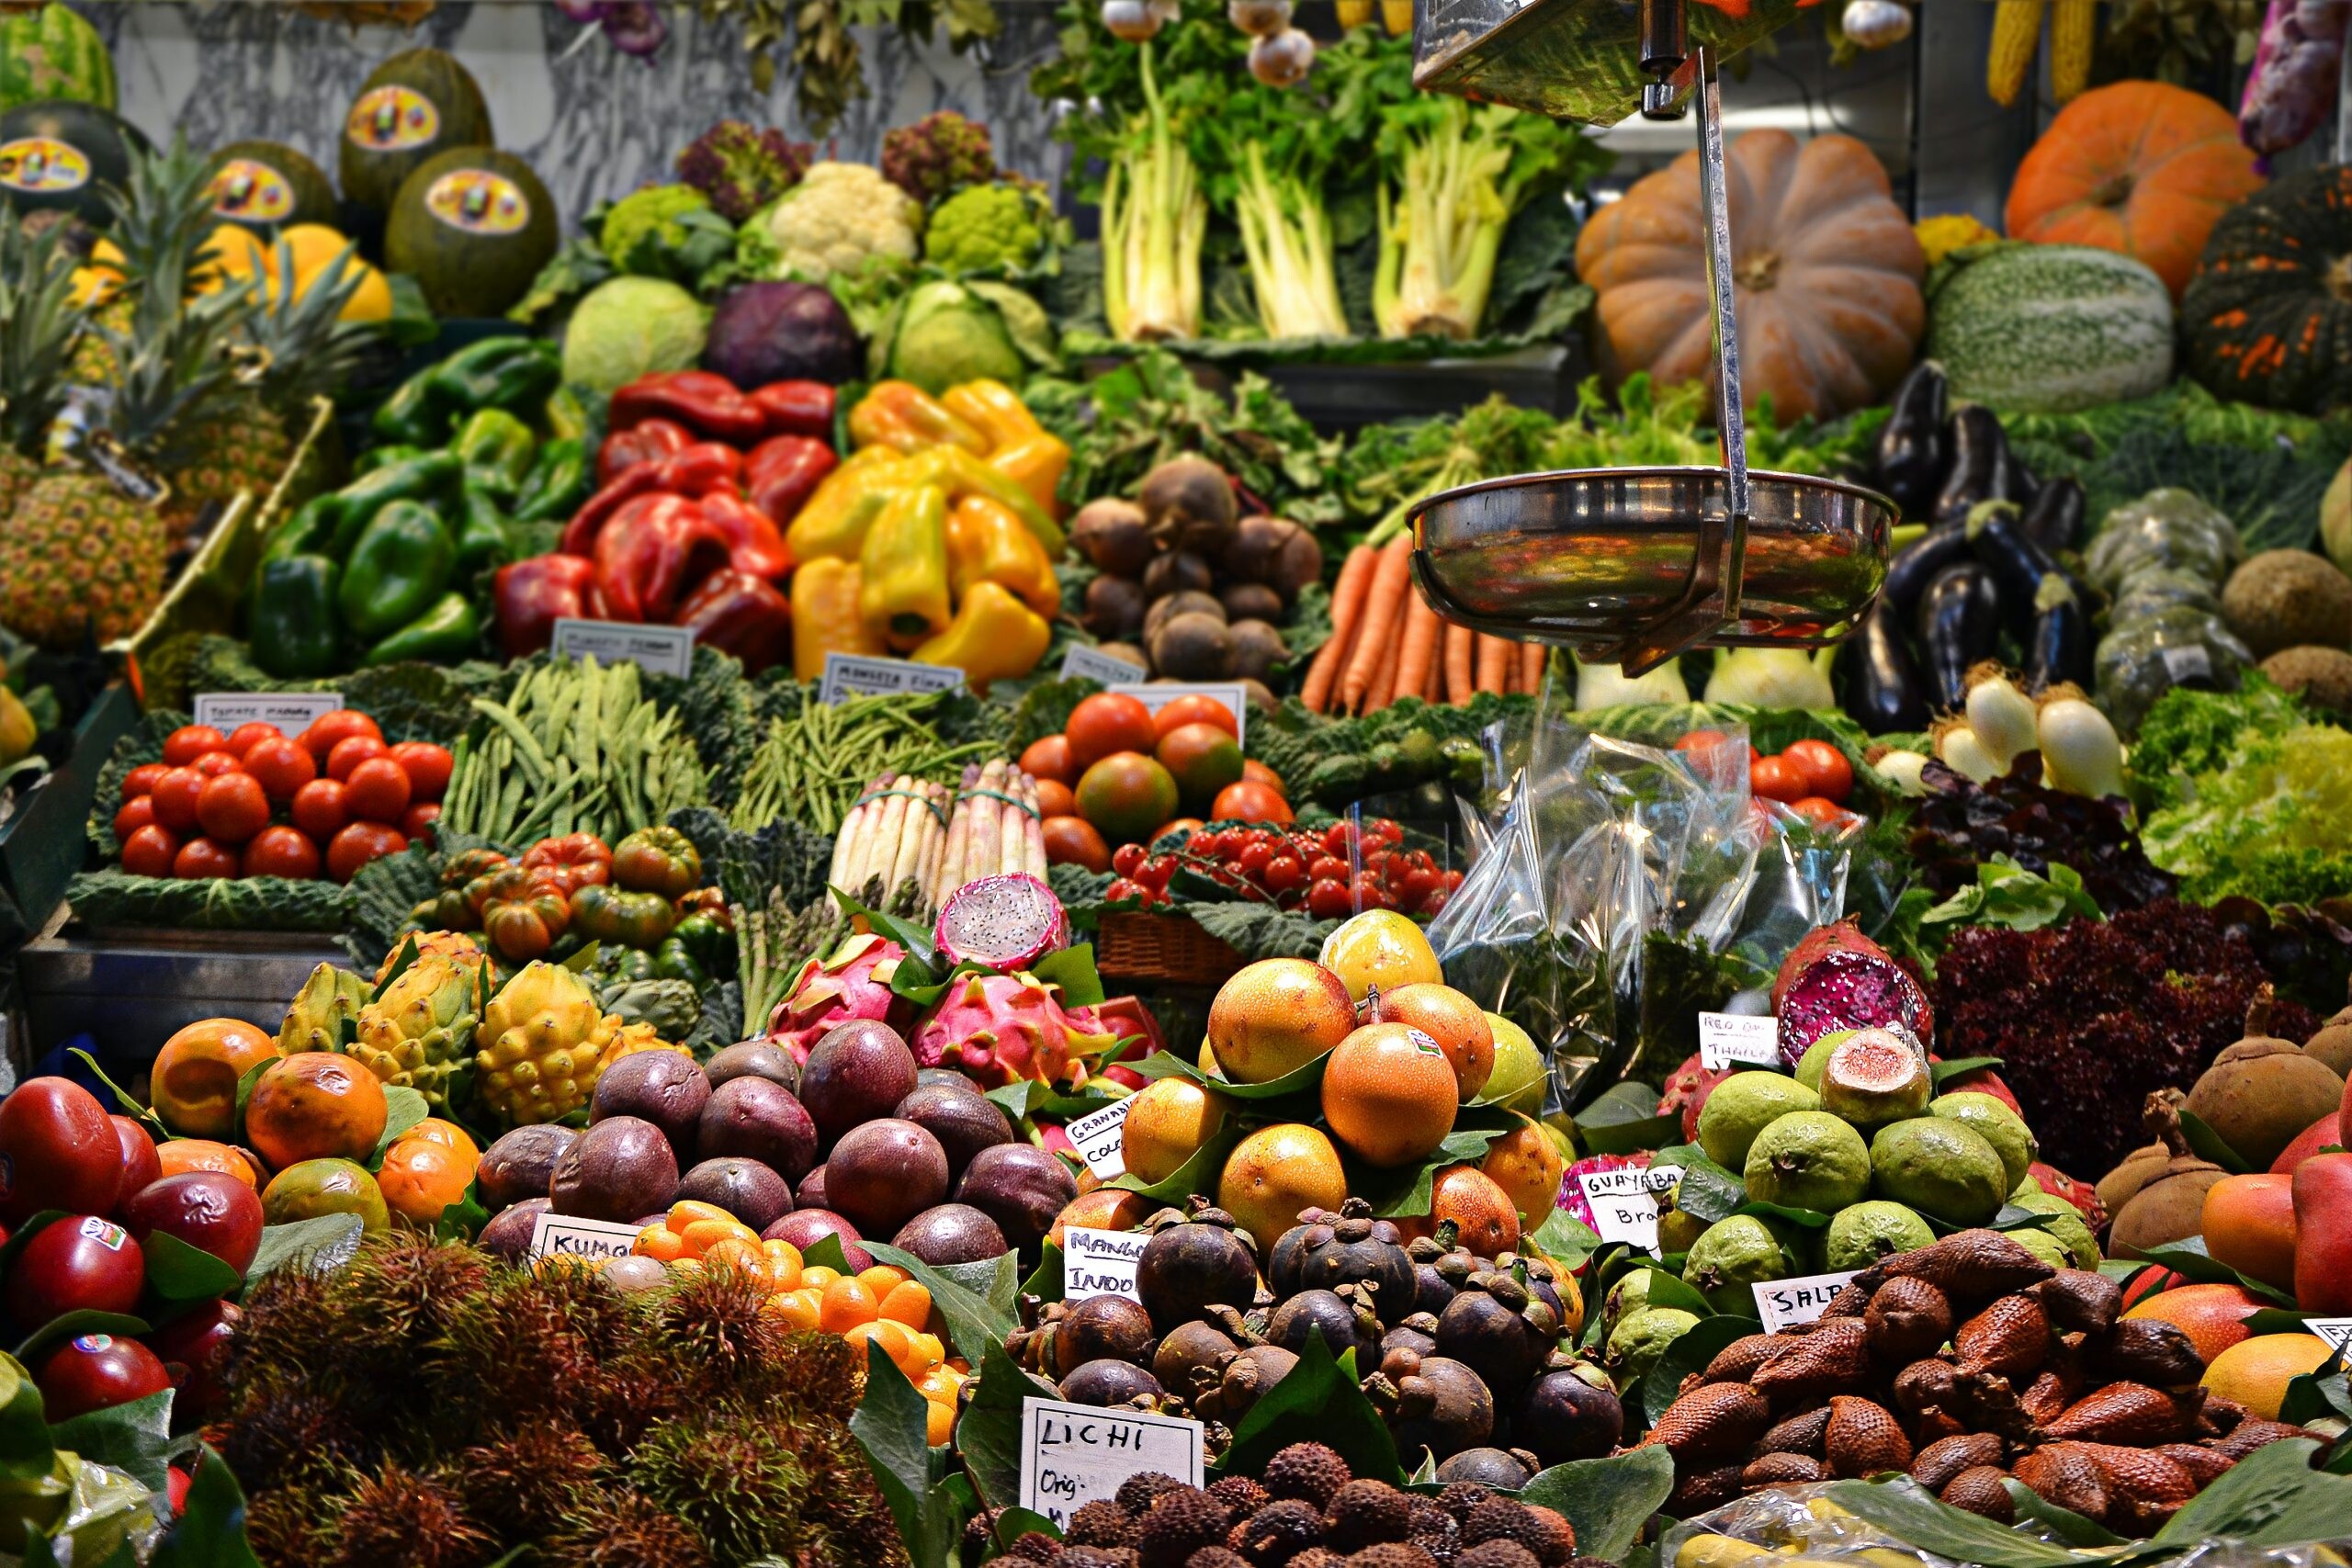 อีสท์ เวสท์ ซีด ชวนส่งสูตรปรุงอาหาร 5 ประเภท ร่วมรณรงค์รับประทานอาหารเพื่อสุขภาพมากขึ้น เฉลิมฉลองปีแห่งผักและผลไม้สากลขององค์การสหประชาชาติ